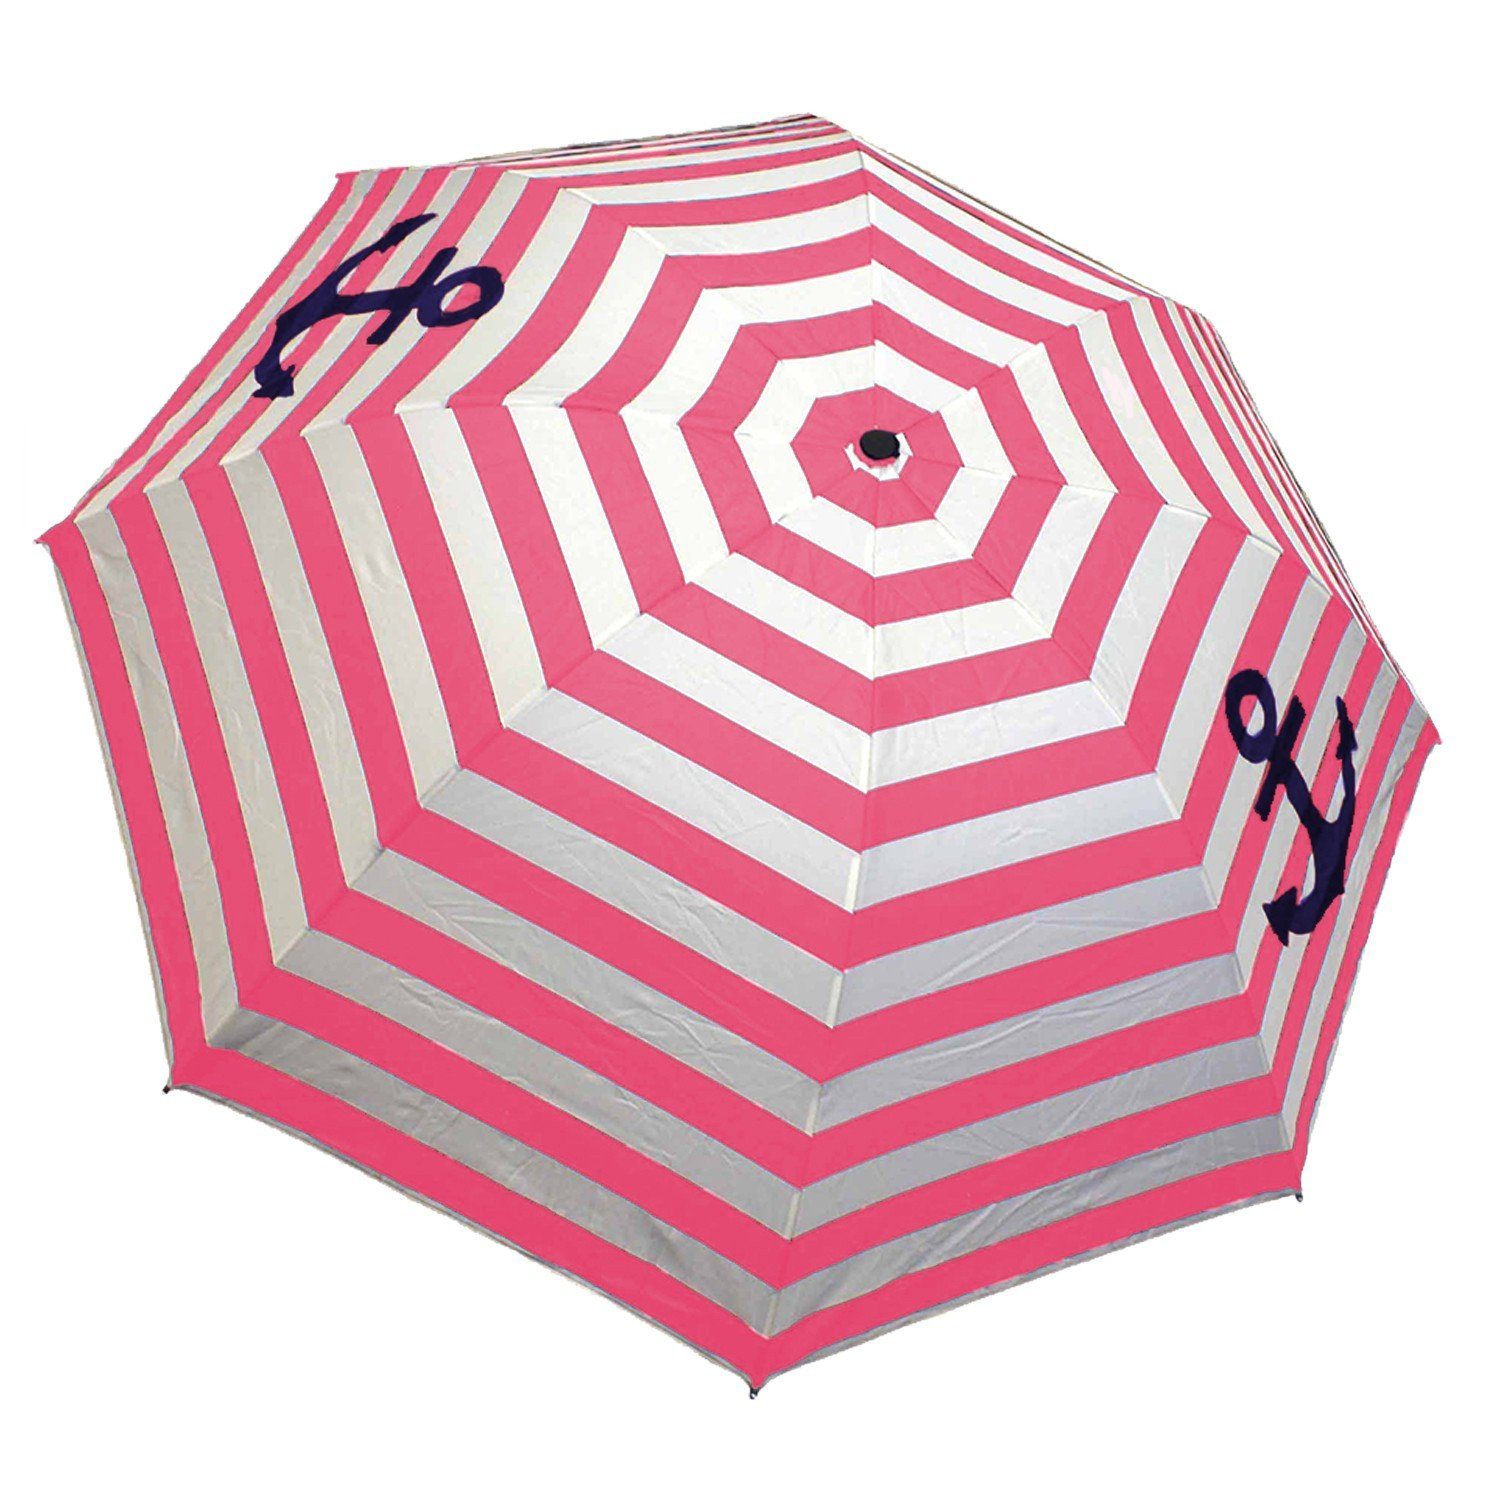 Sonia Originelli Taschenregenschirm Taschenschirm Schutz "Maritim" Streifen rosa Anker